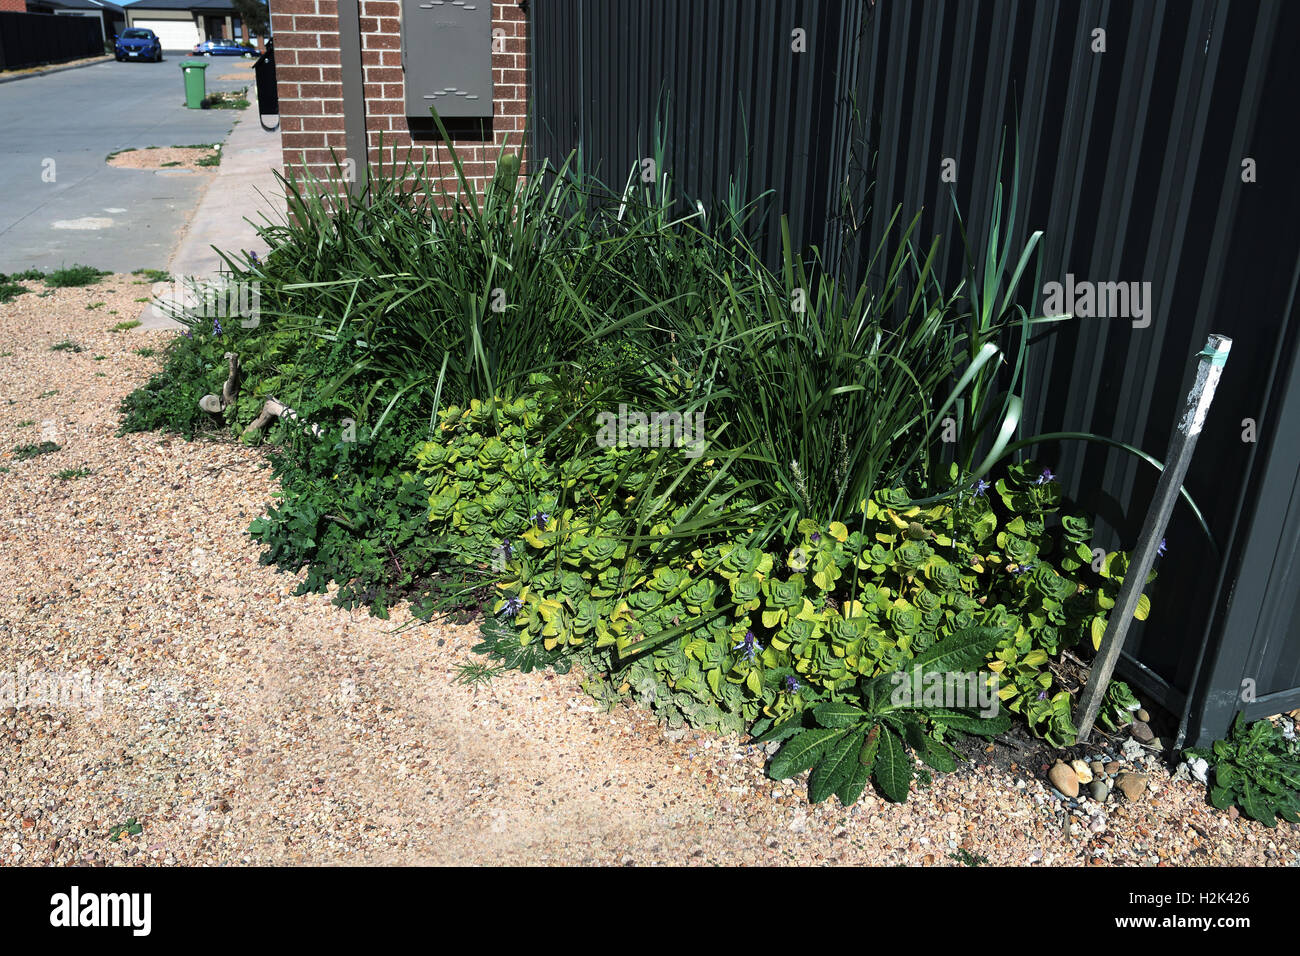 Varietà di piante come Lomandra erba, Dogbane e tarassaco crescente nei pressi del recinto del cortile Foto Stock